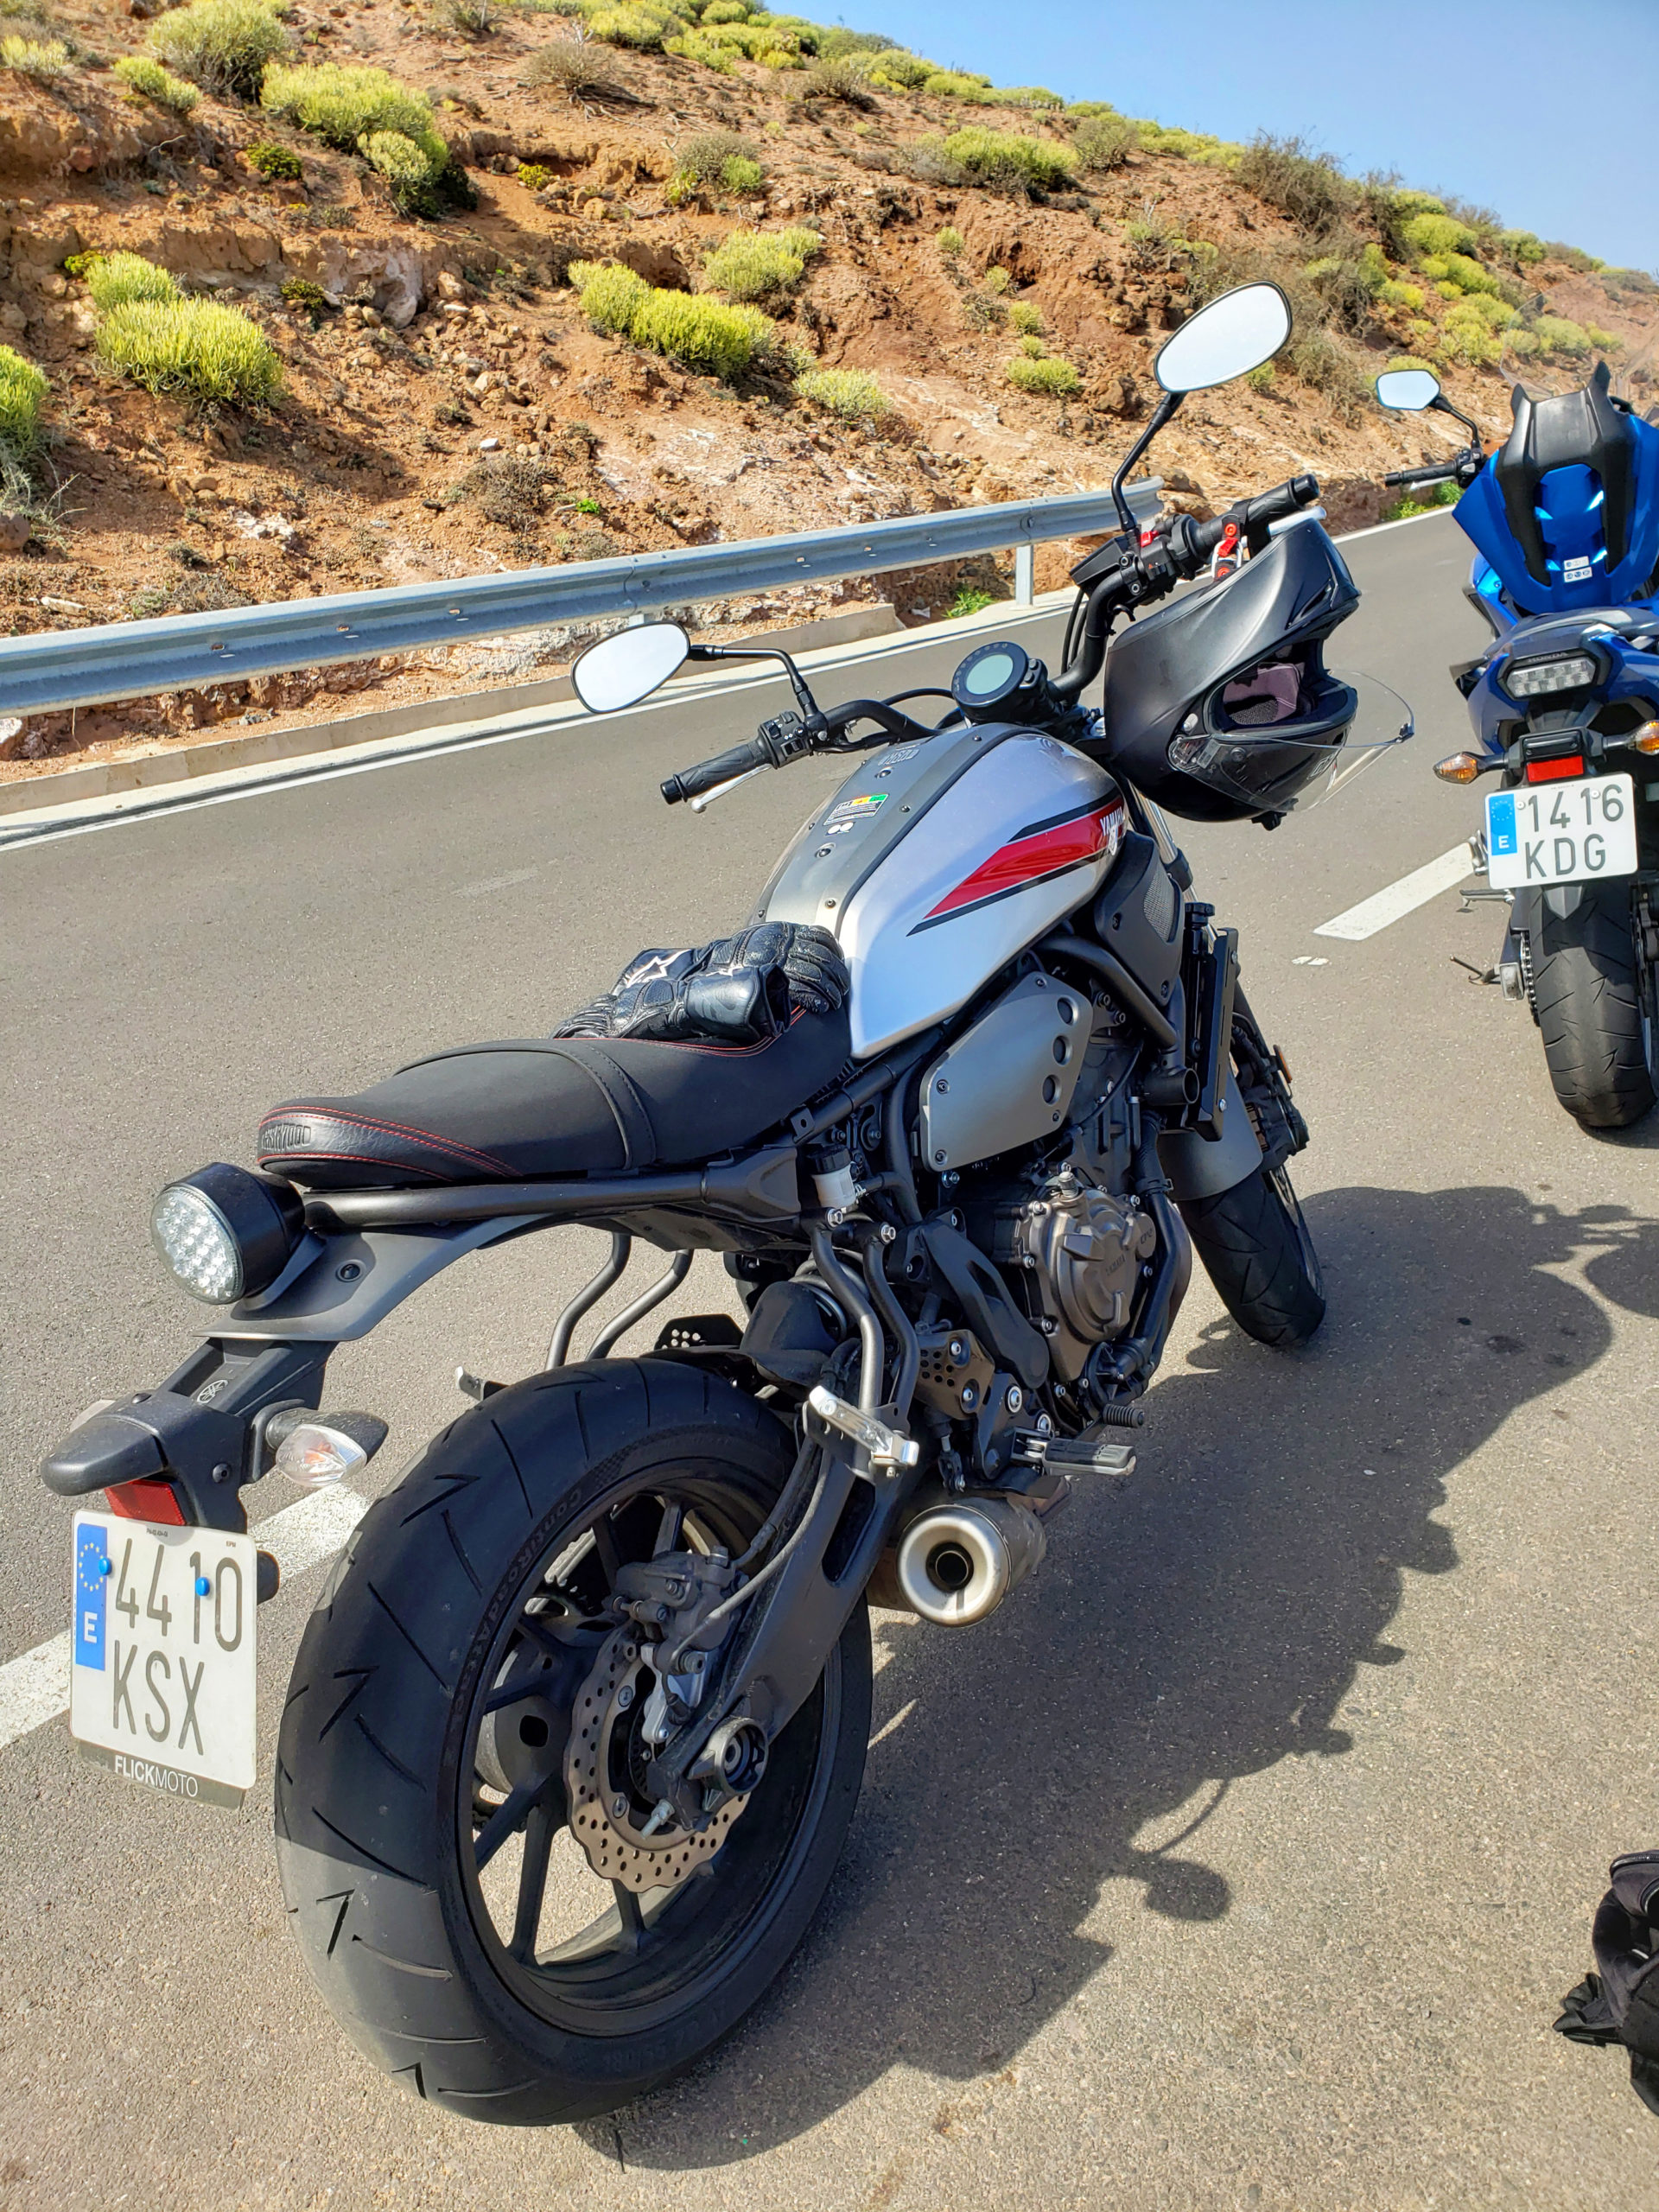 Gran_Canaria_Canary_Islands_Motorcycle_Destination